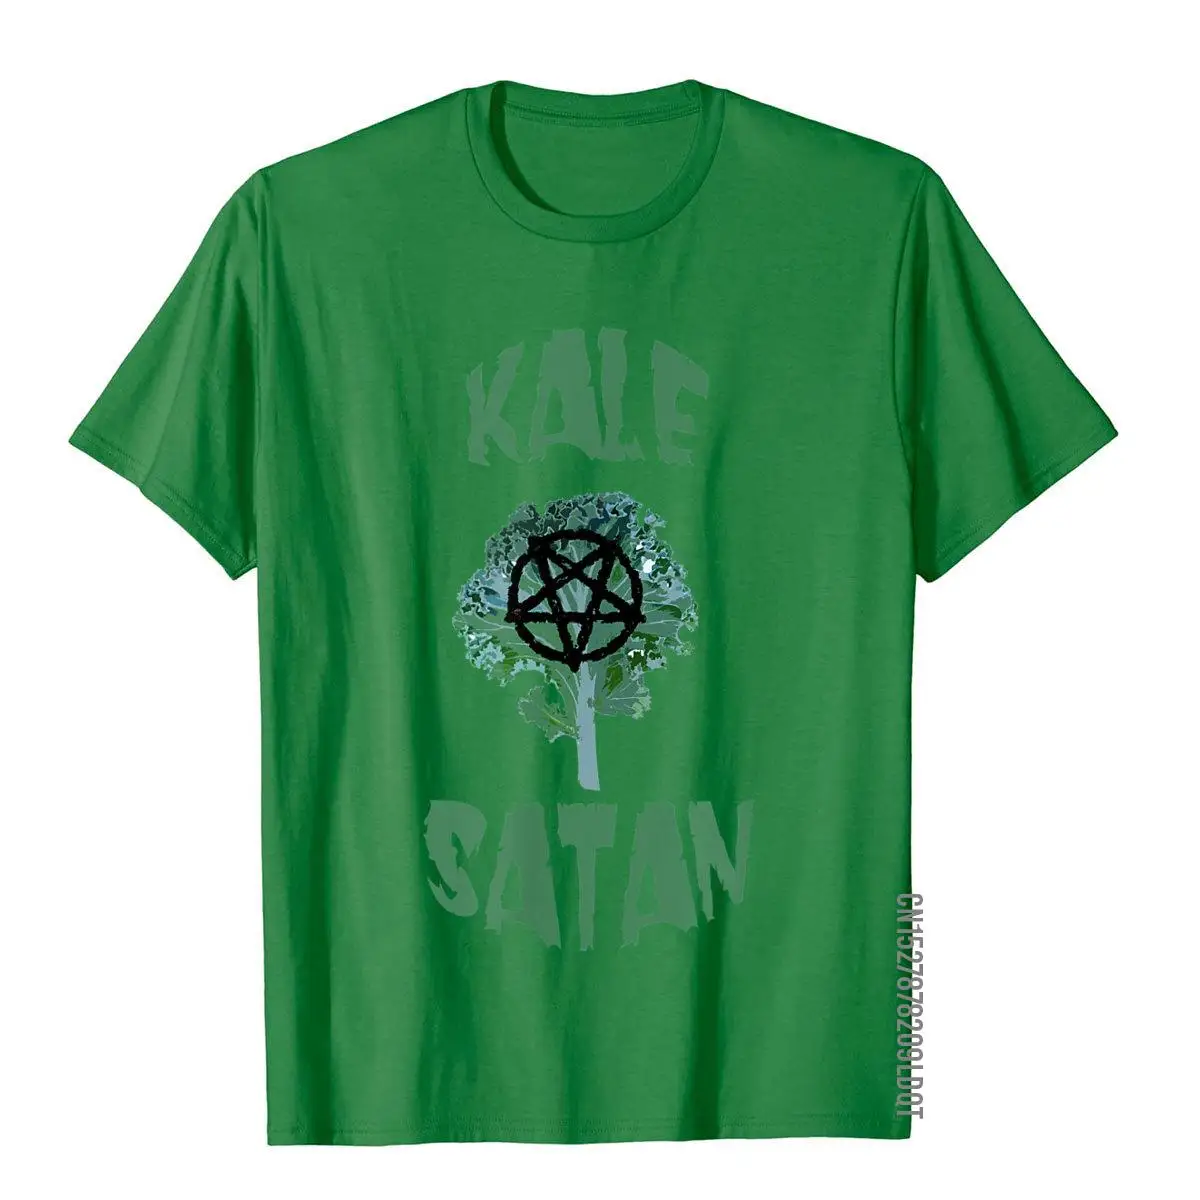 Забавная Мужская футболка Kale сатана веселая демоническая pentложенная звезда